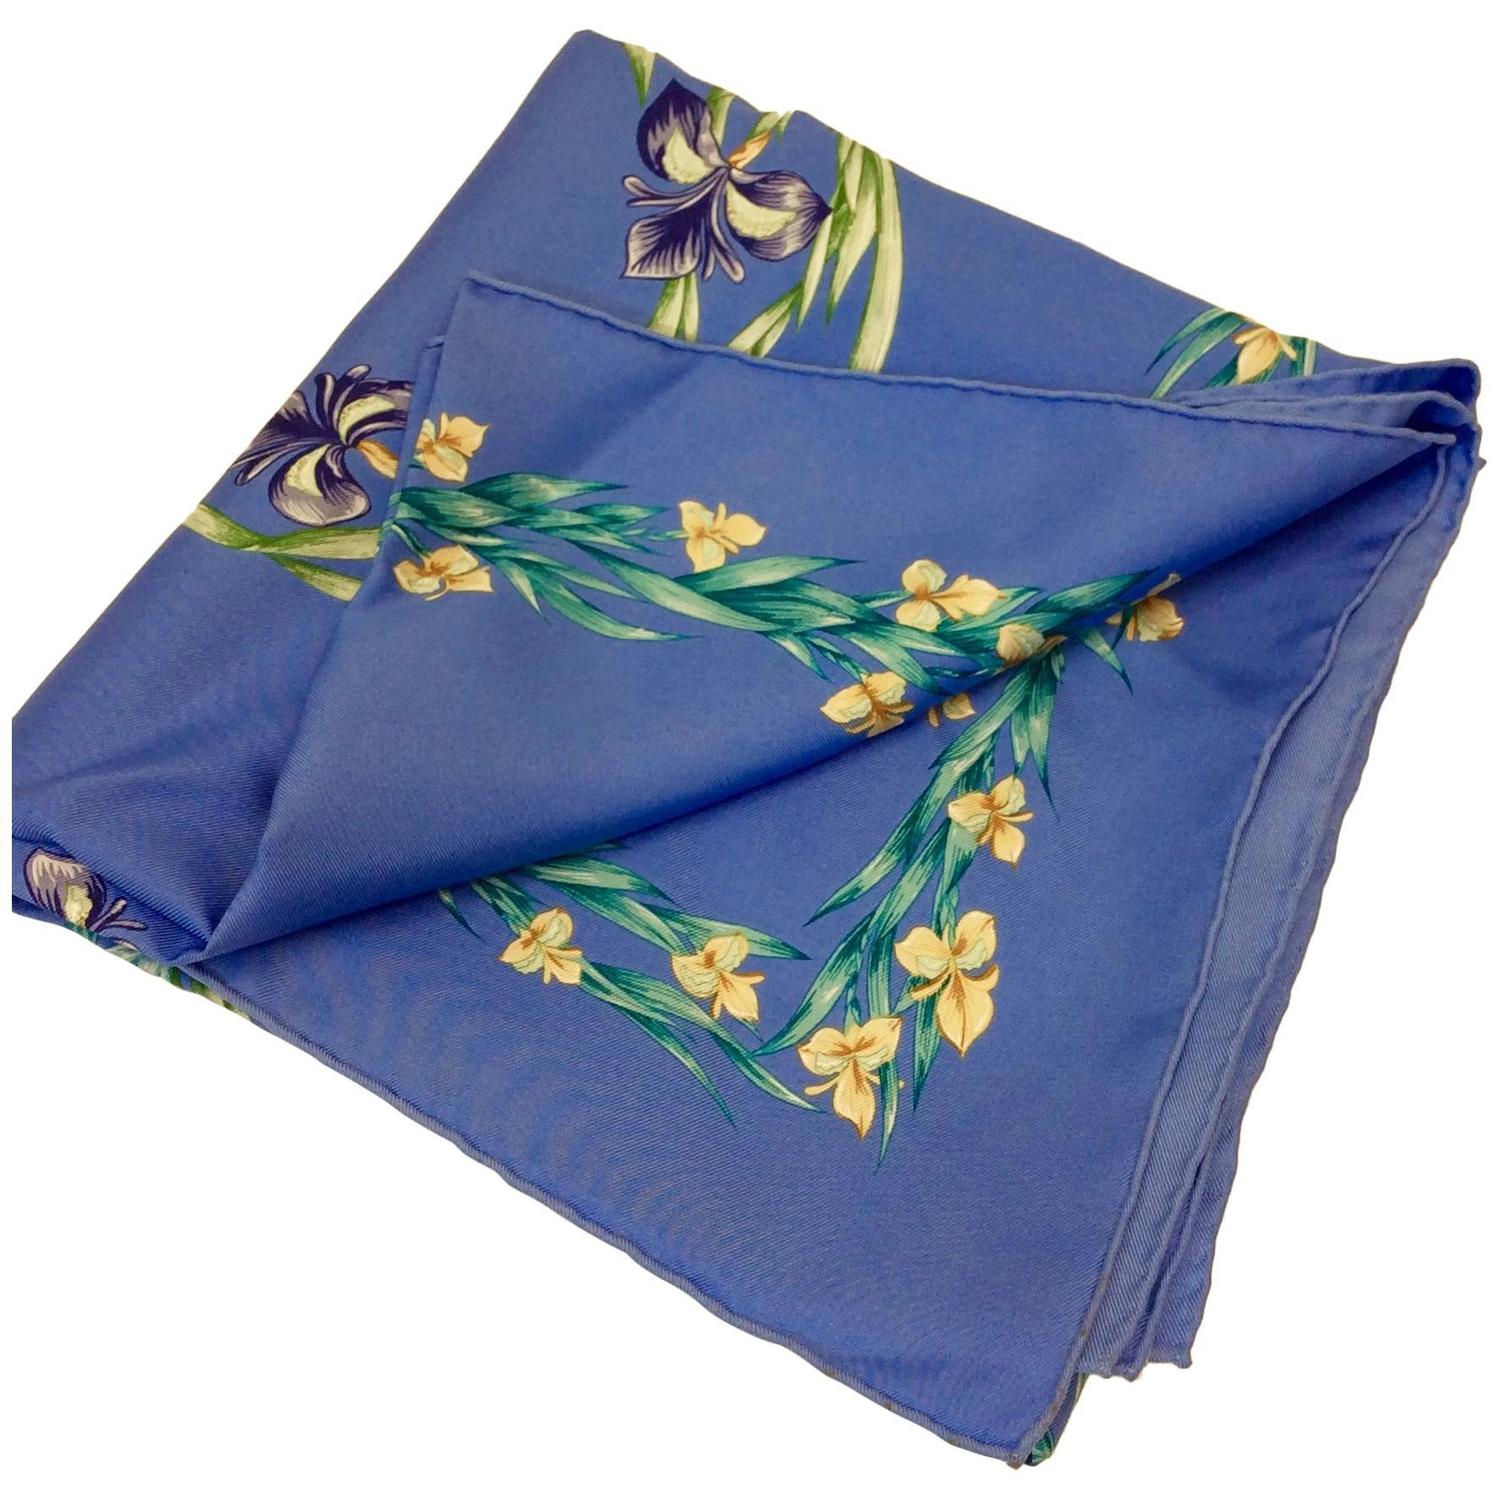 Hermes Light Blue Silk Floral Scarf For Sale at 1stdibs